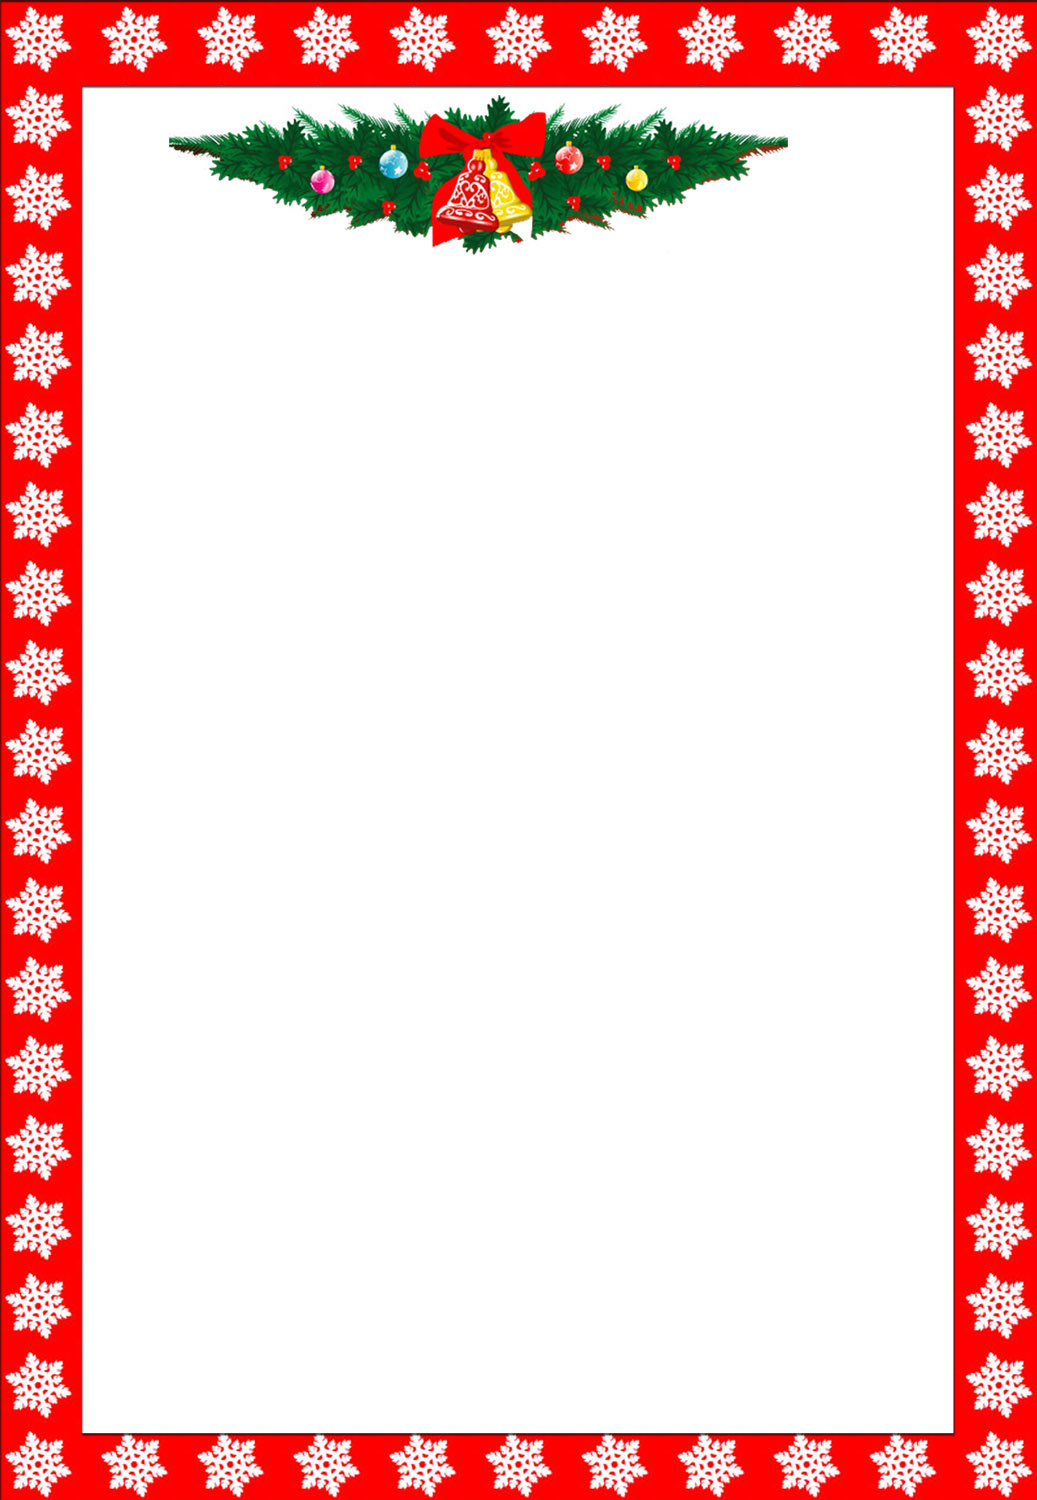 Free Printable Christmas Stationary Borders Trials Ireland - Free Printable Christmas Paper With Borders